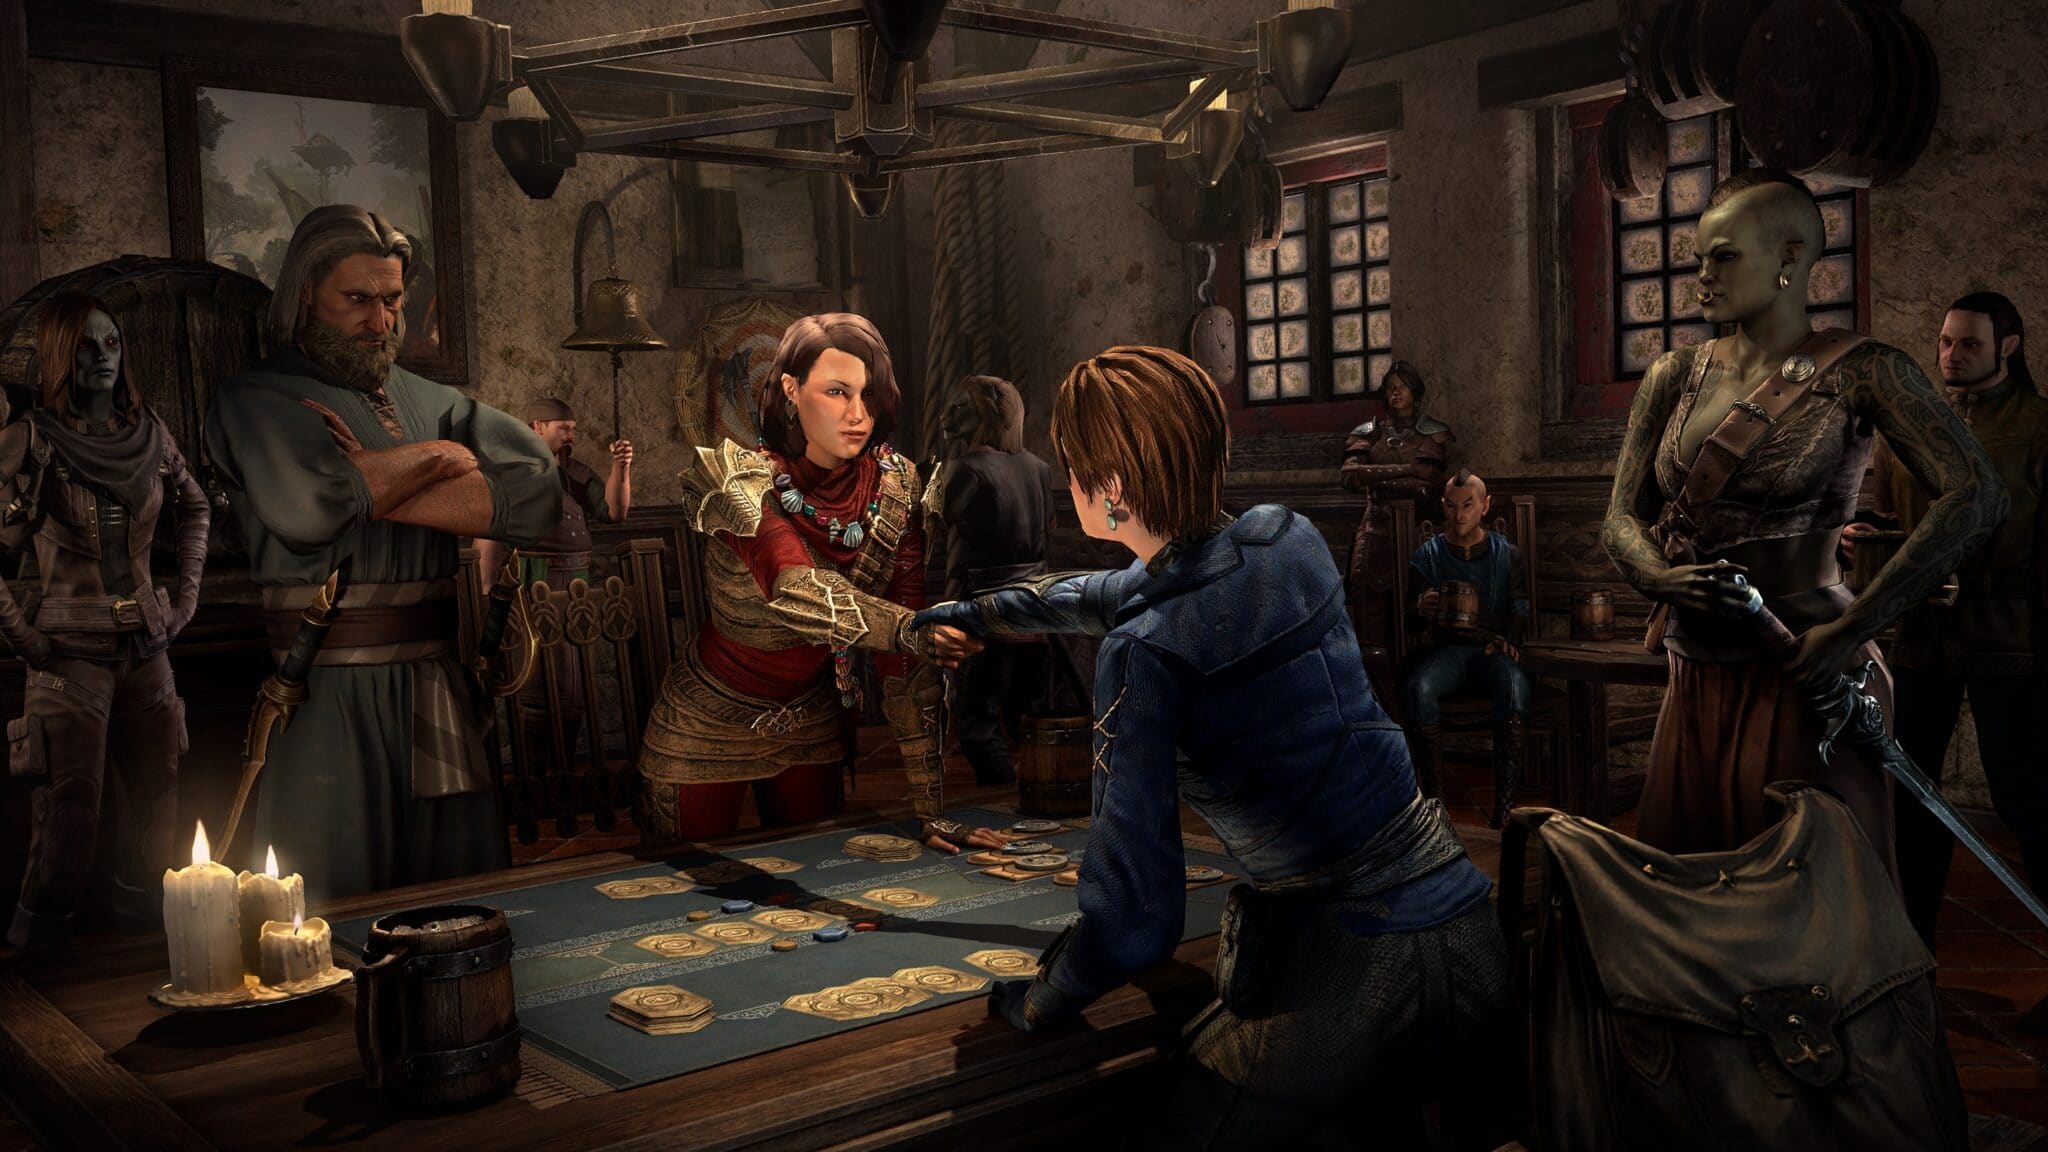 Gli abitanti di Tamriel amano divertirsi giocando a carte storia di gloria nella taverna.